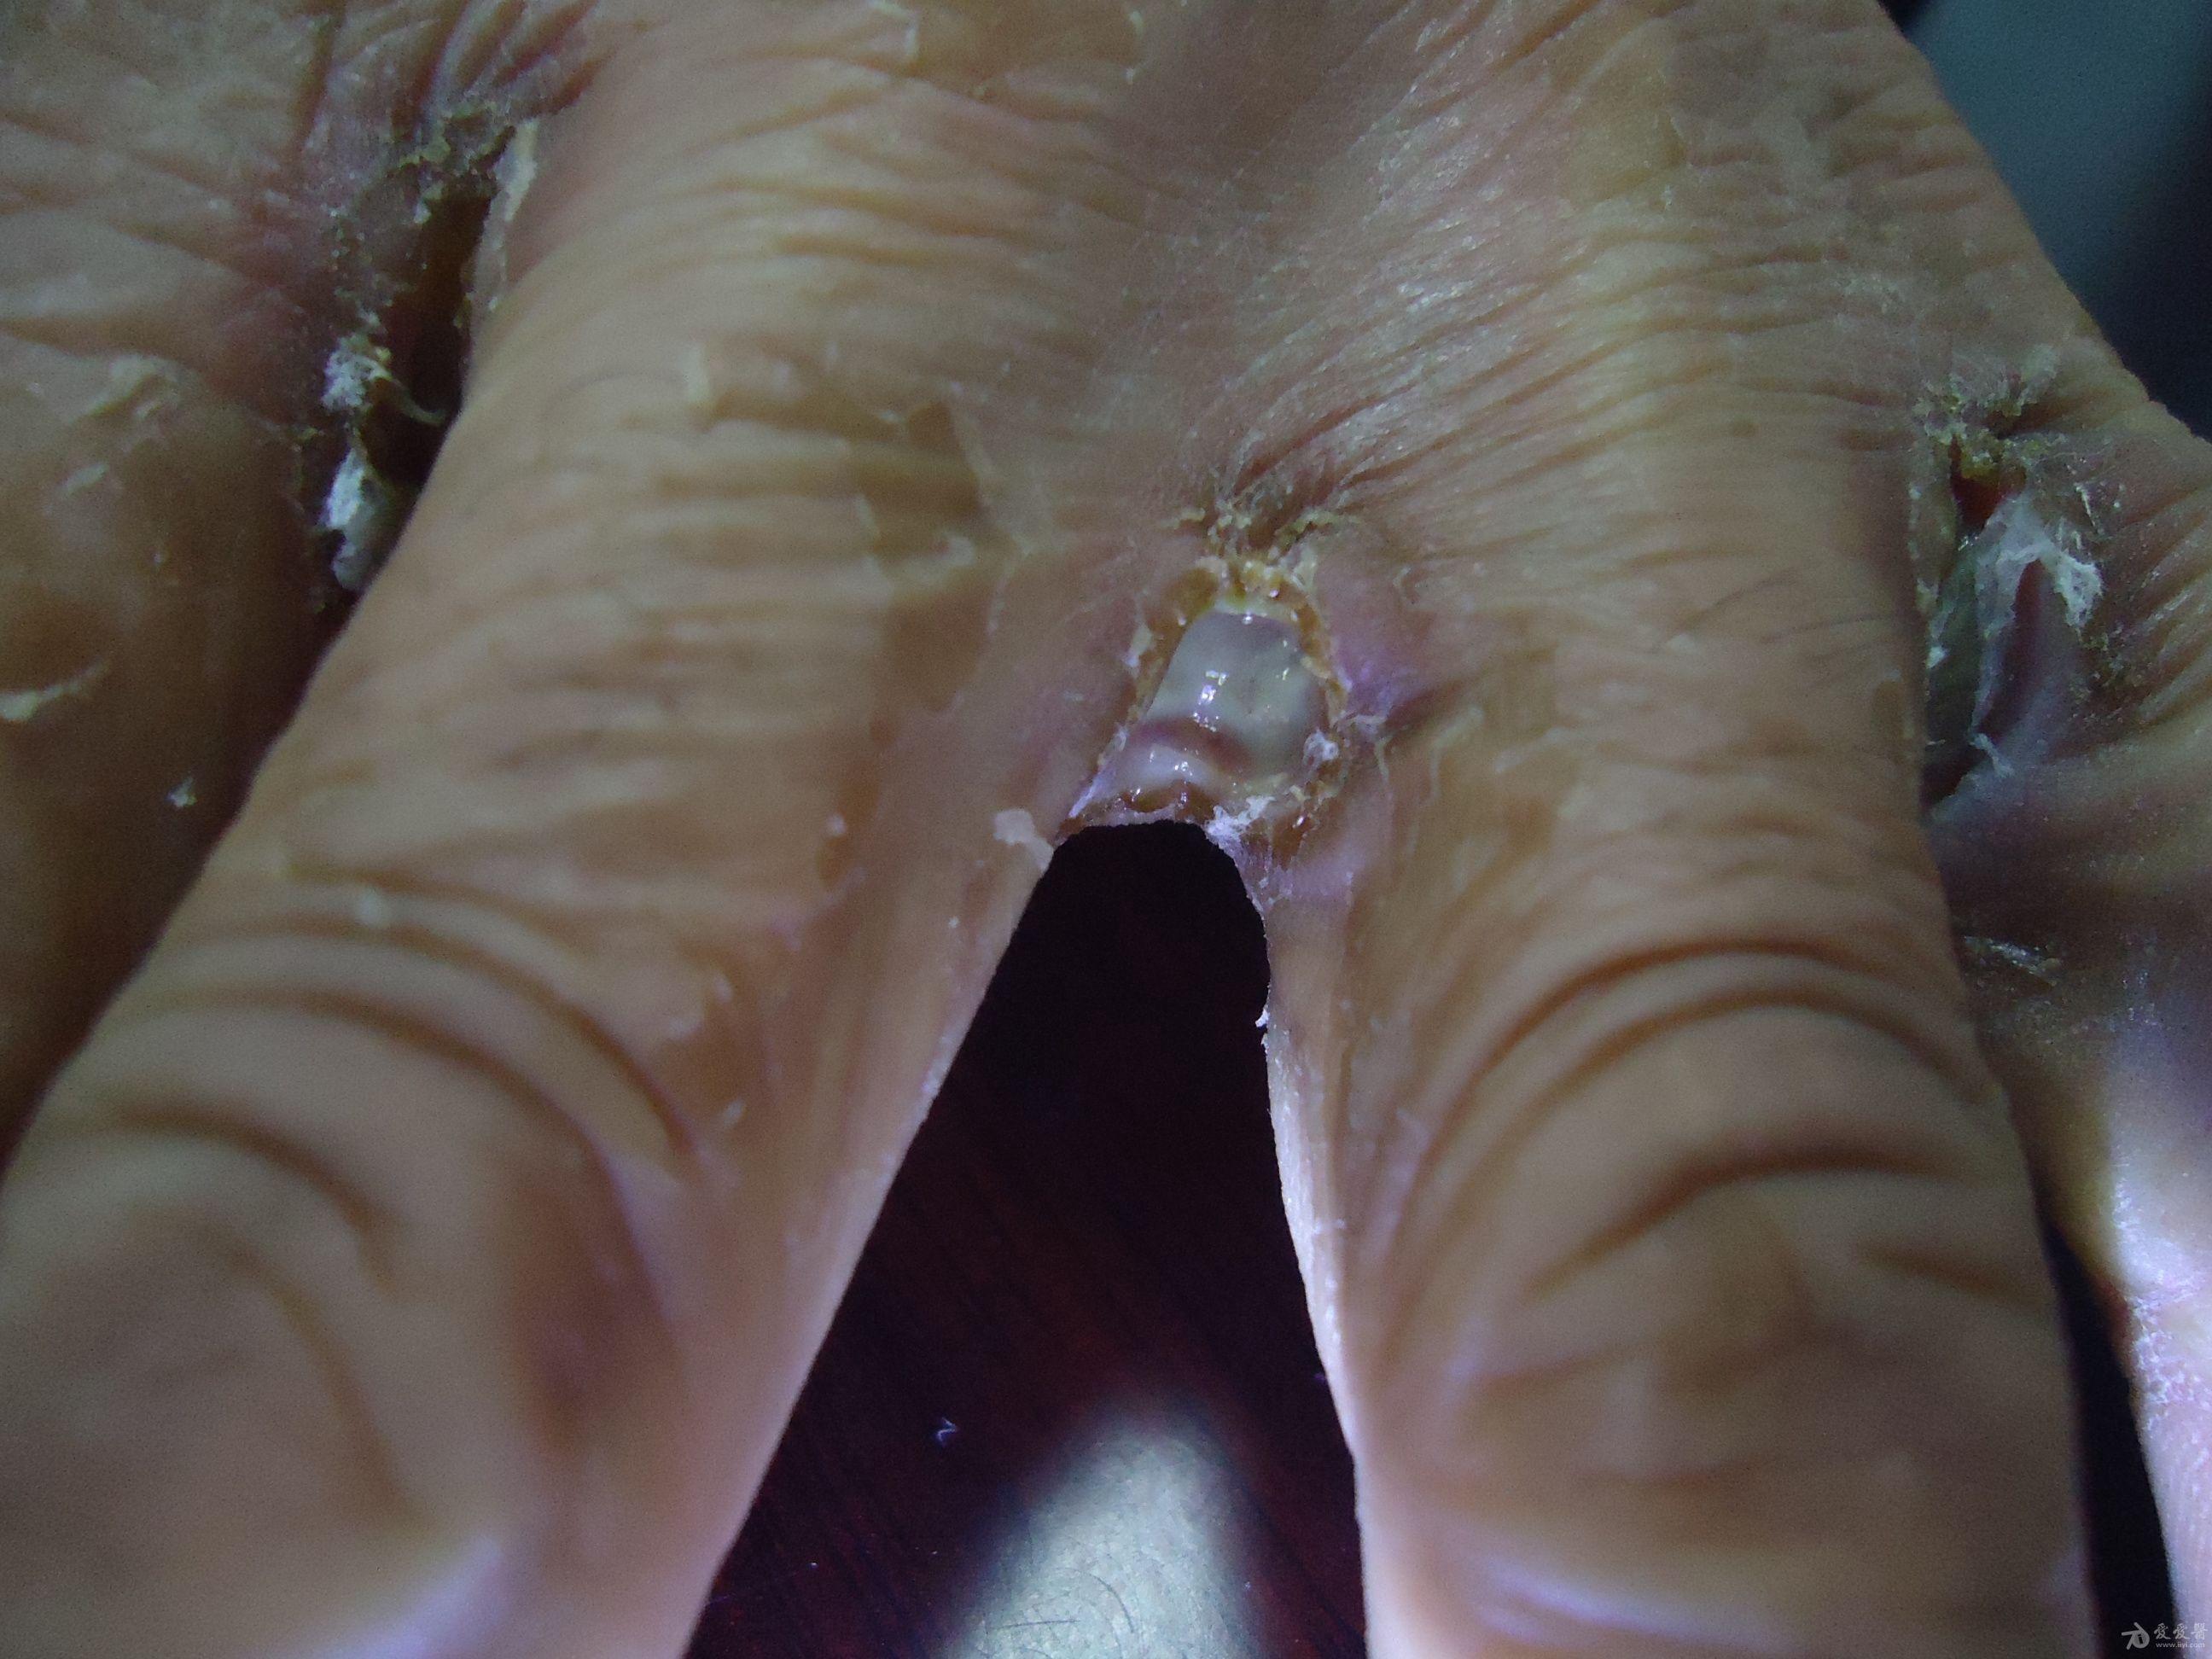 手指坏疽病初期的图片图片